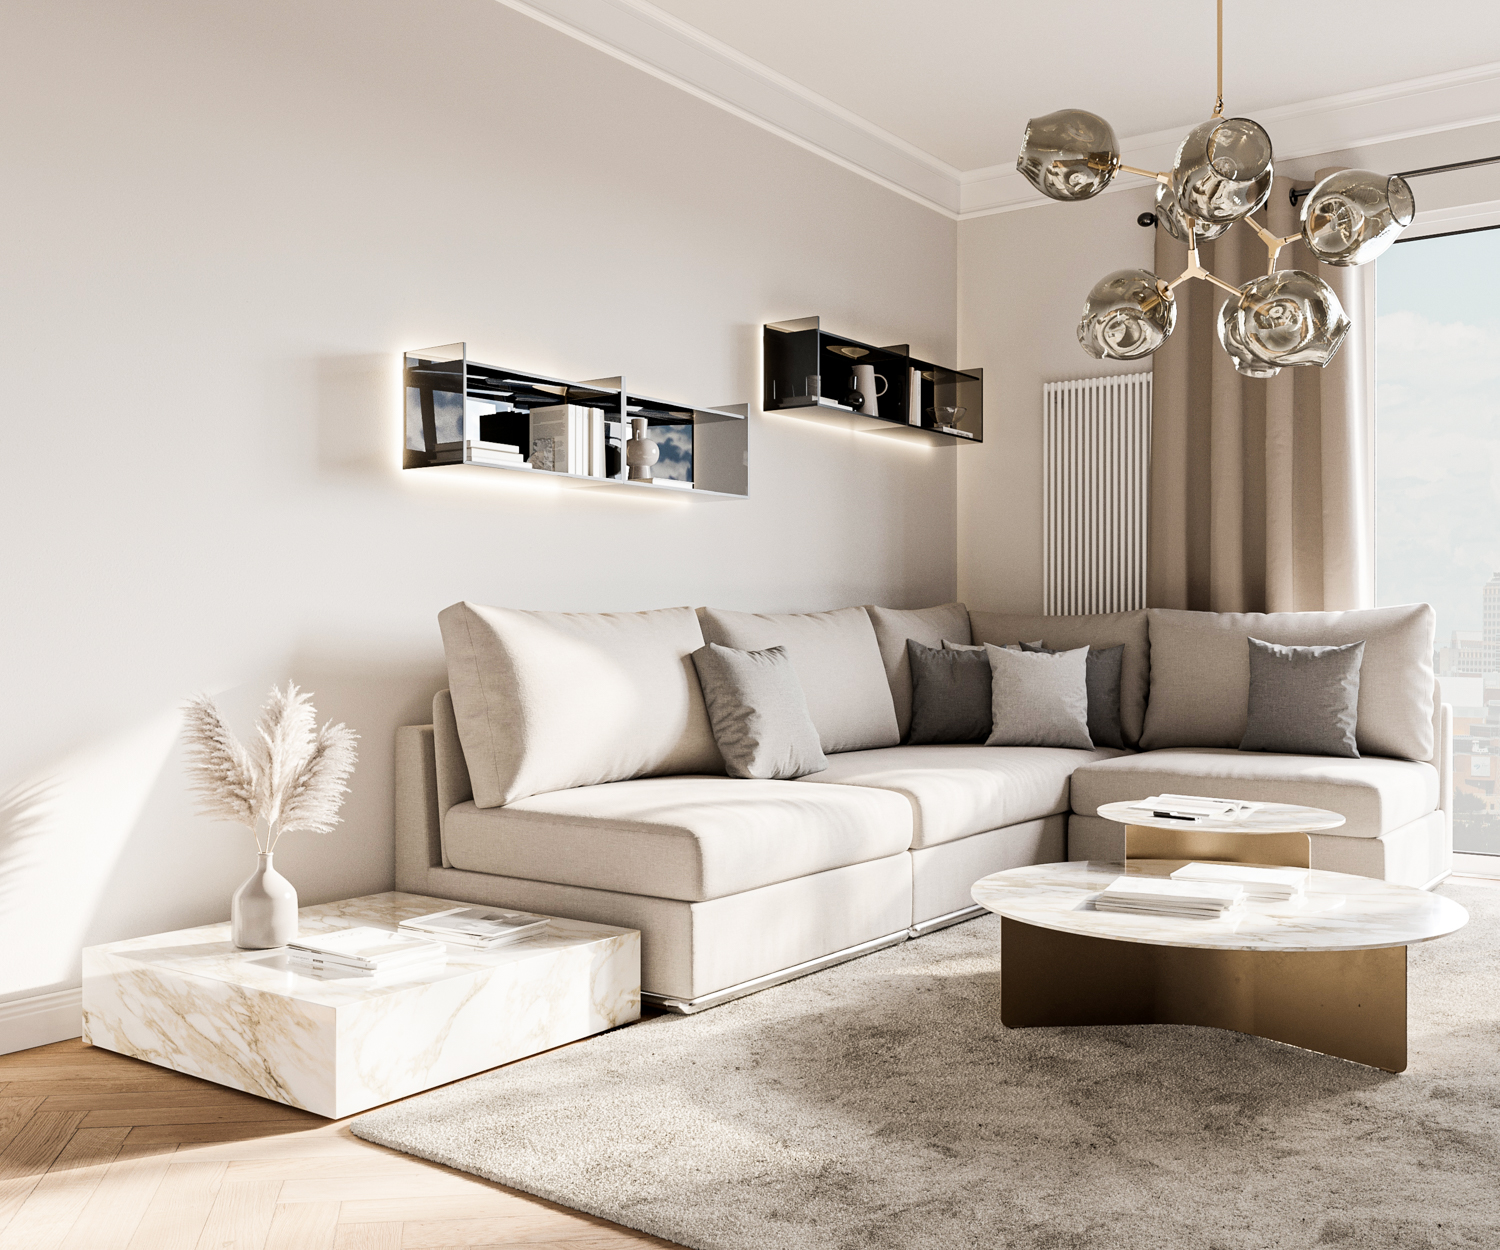 Stilvolles Design Wohnzimmer mit Ecksofa und Glas Wandregal und Couchtisch Beistelltisch Kombination